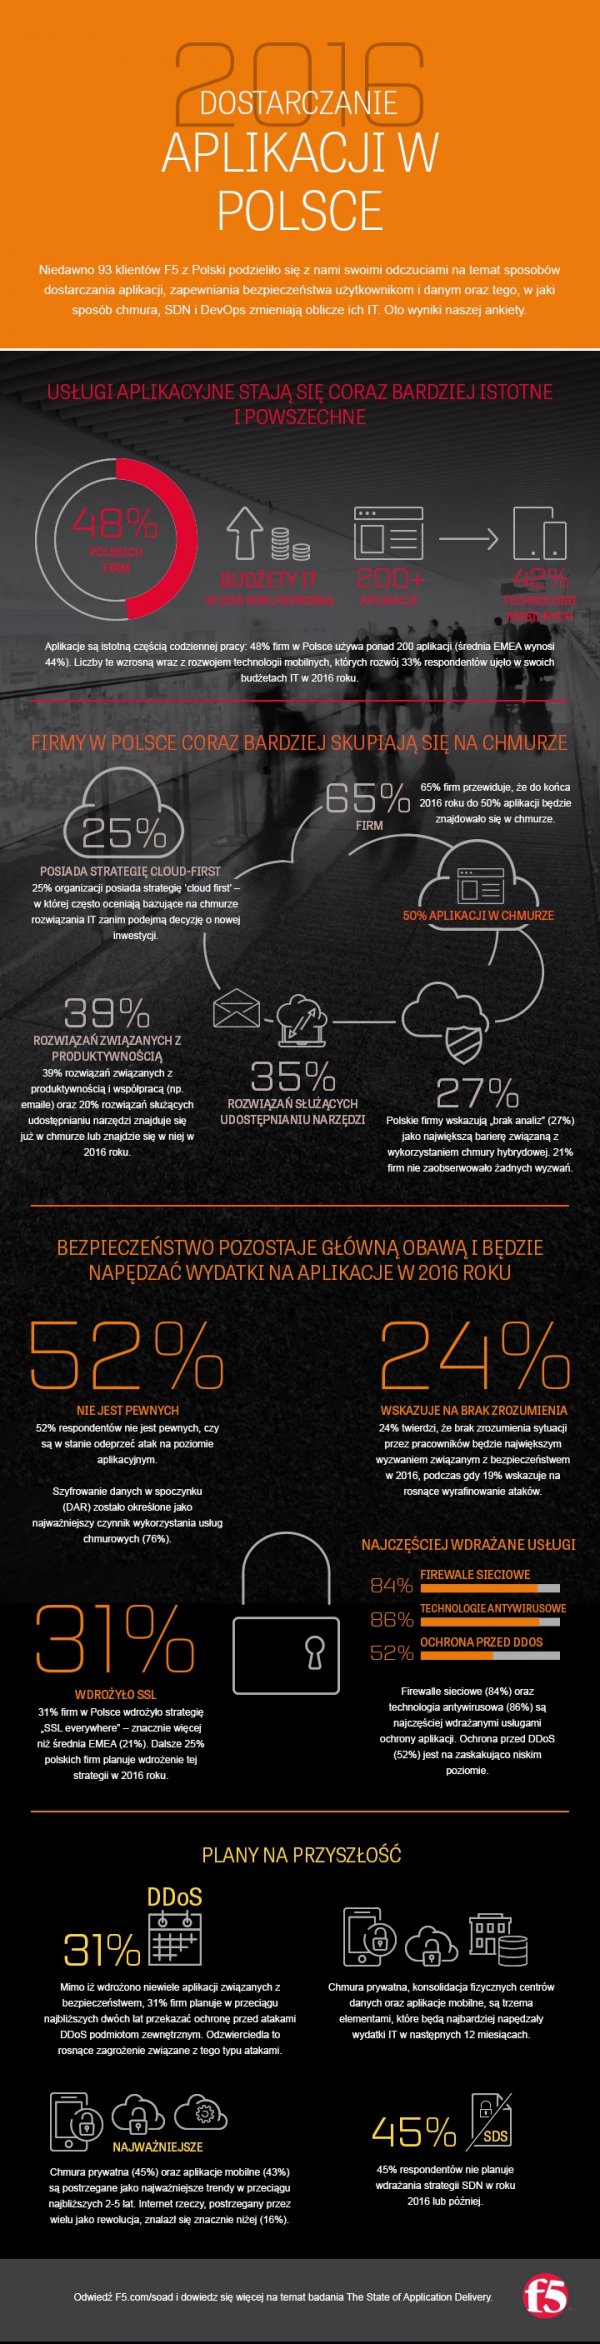 SOAD: Dostarczanie aplikacji w Polsce 2016